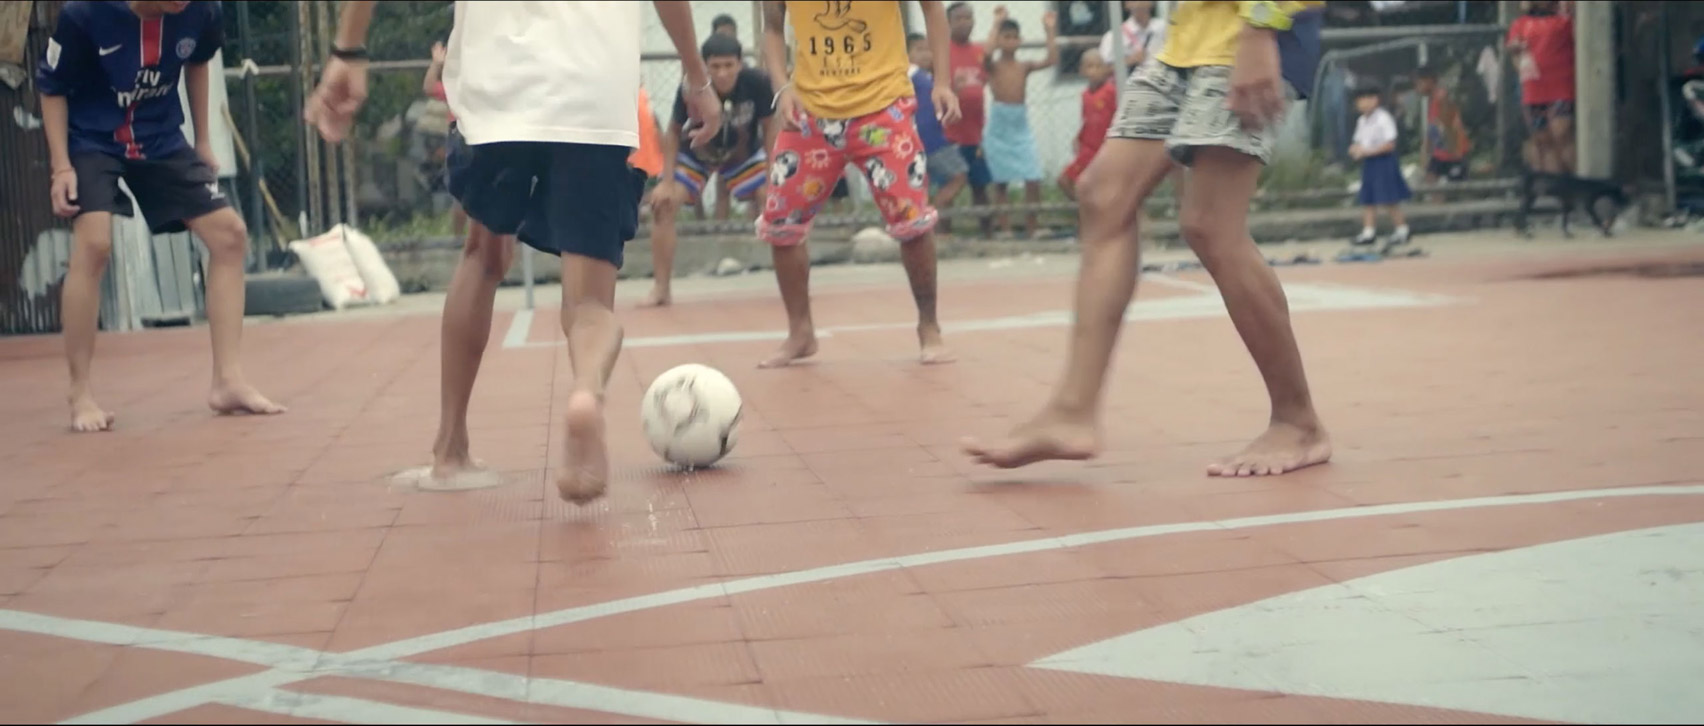 Unusual Football Pitch by AP Thai 